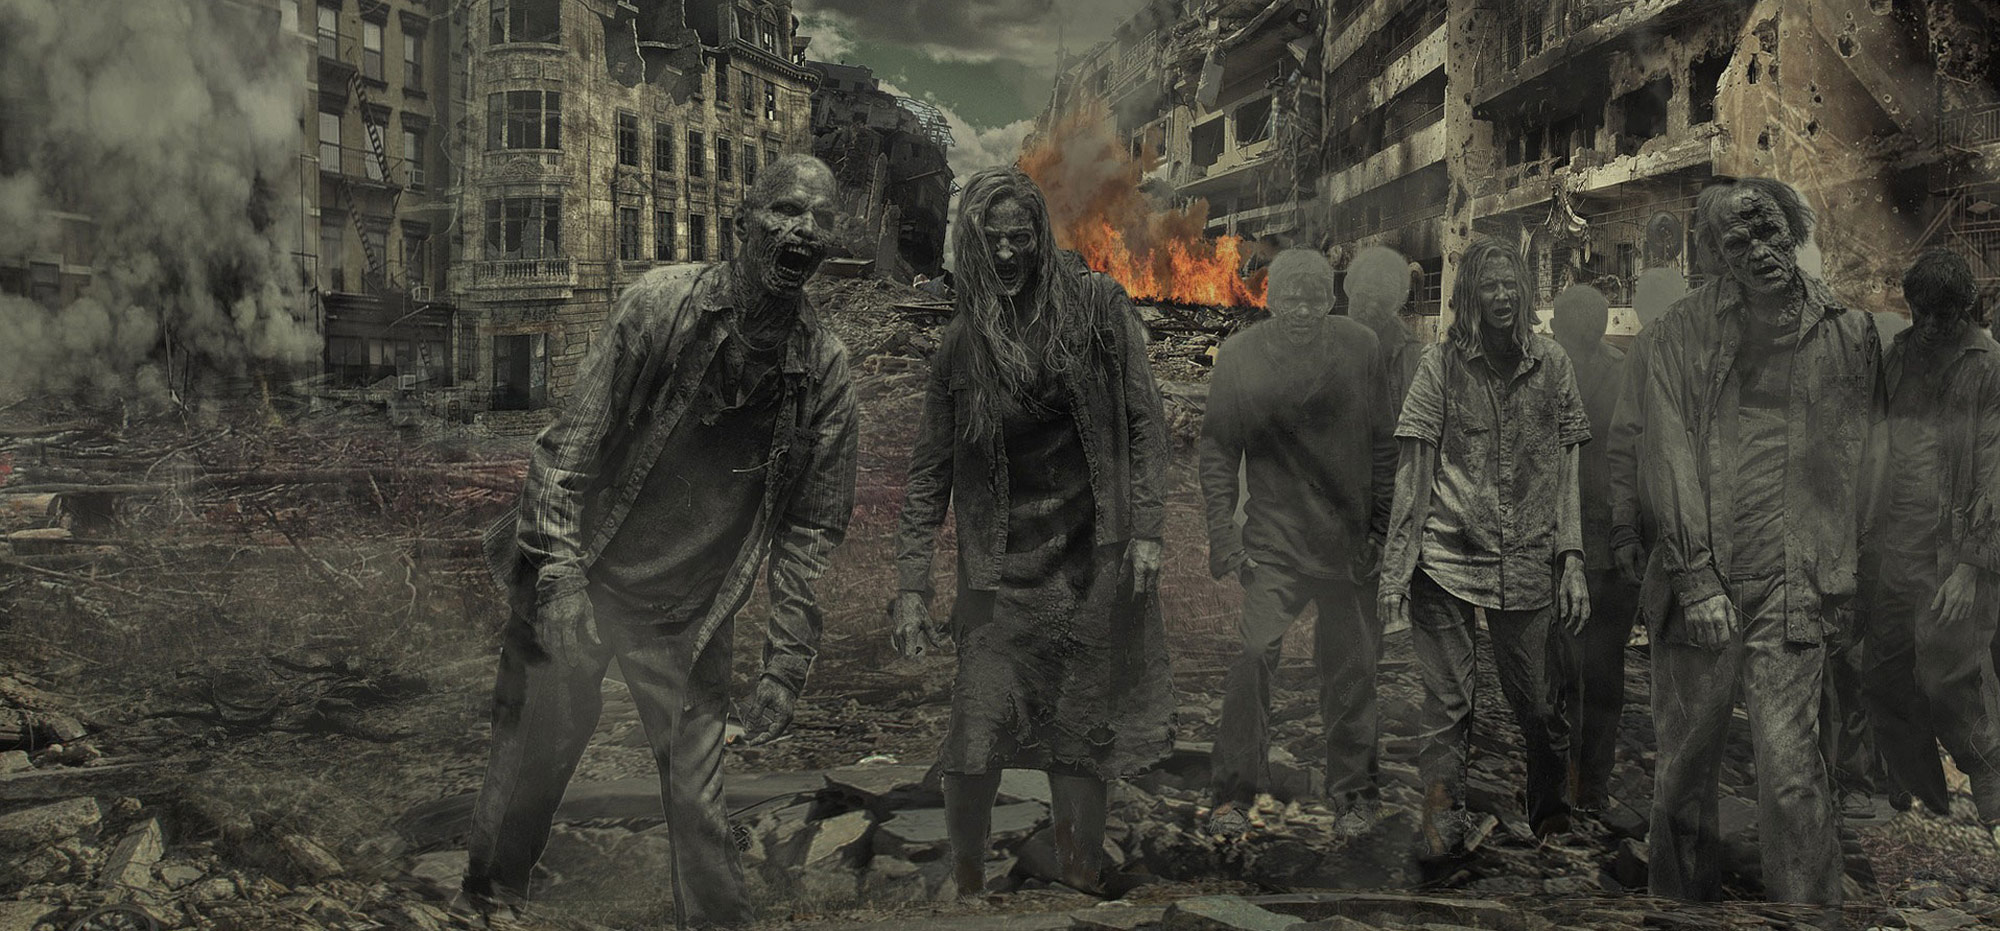 Katastrophenschutz in den USA: Was können Bürger gegen Zombies tun